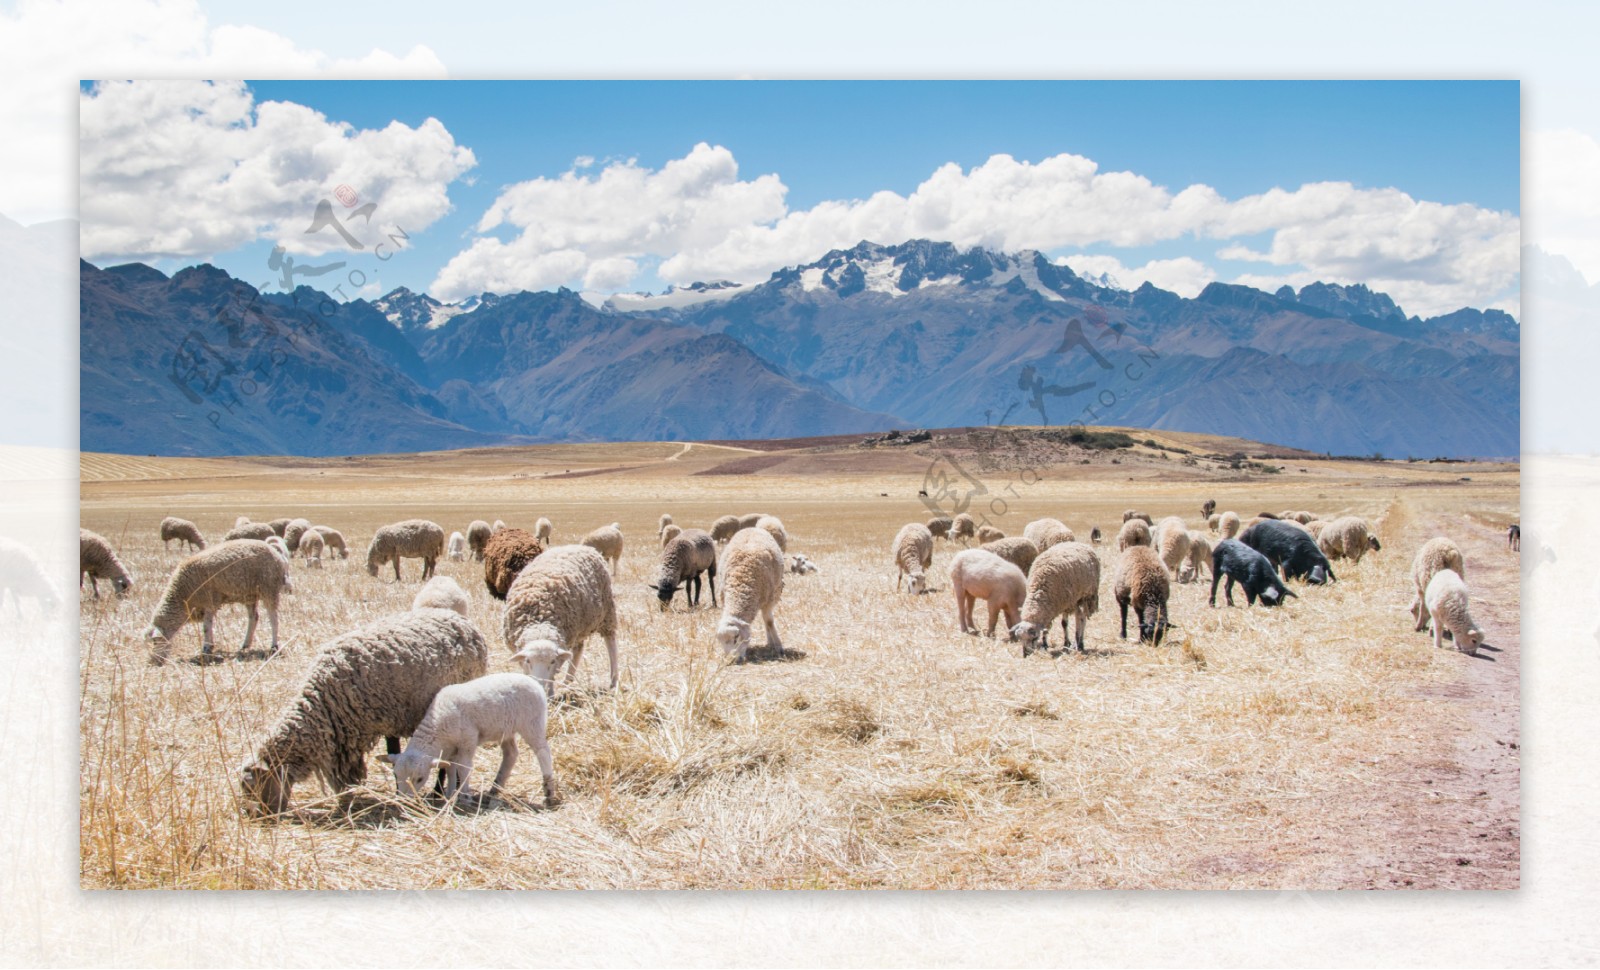 漫山遍野的羊群